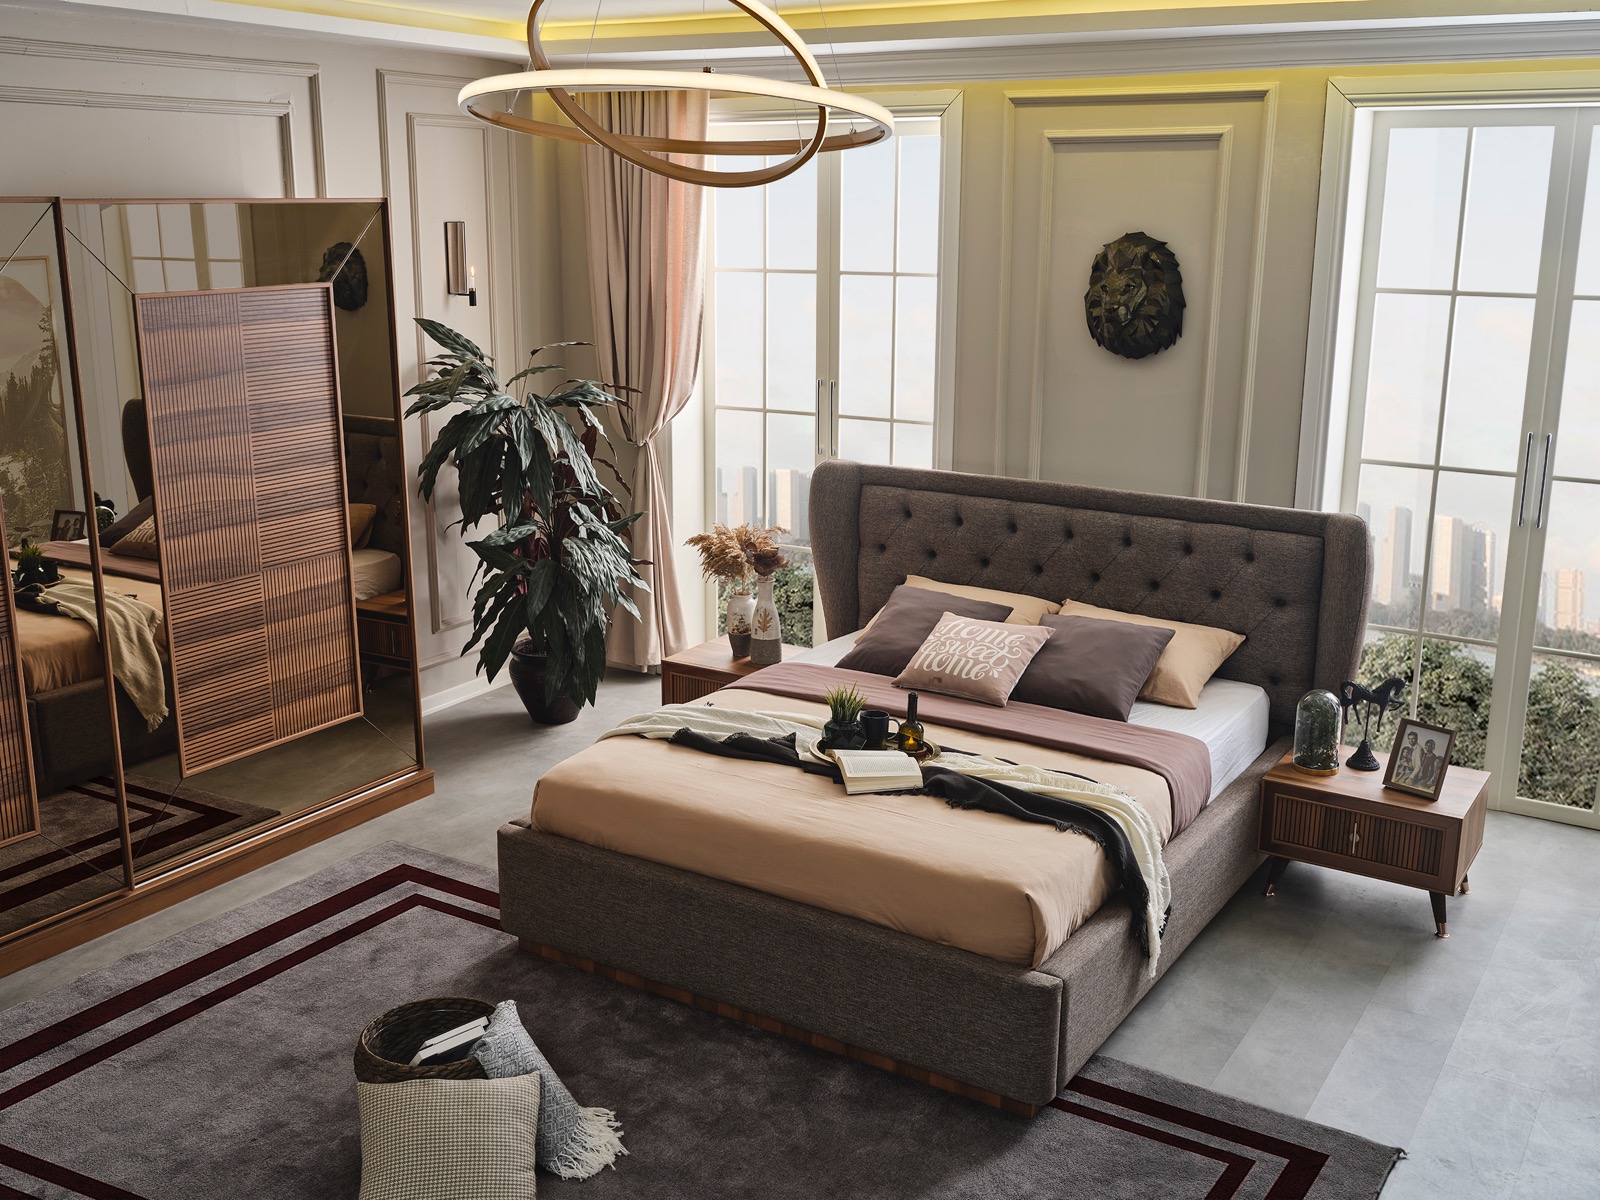 yeni model yatak odaları , as oda mobilya , asoda toprak yatak odası